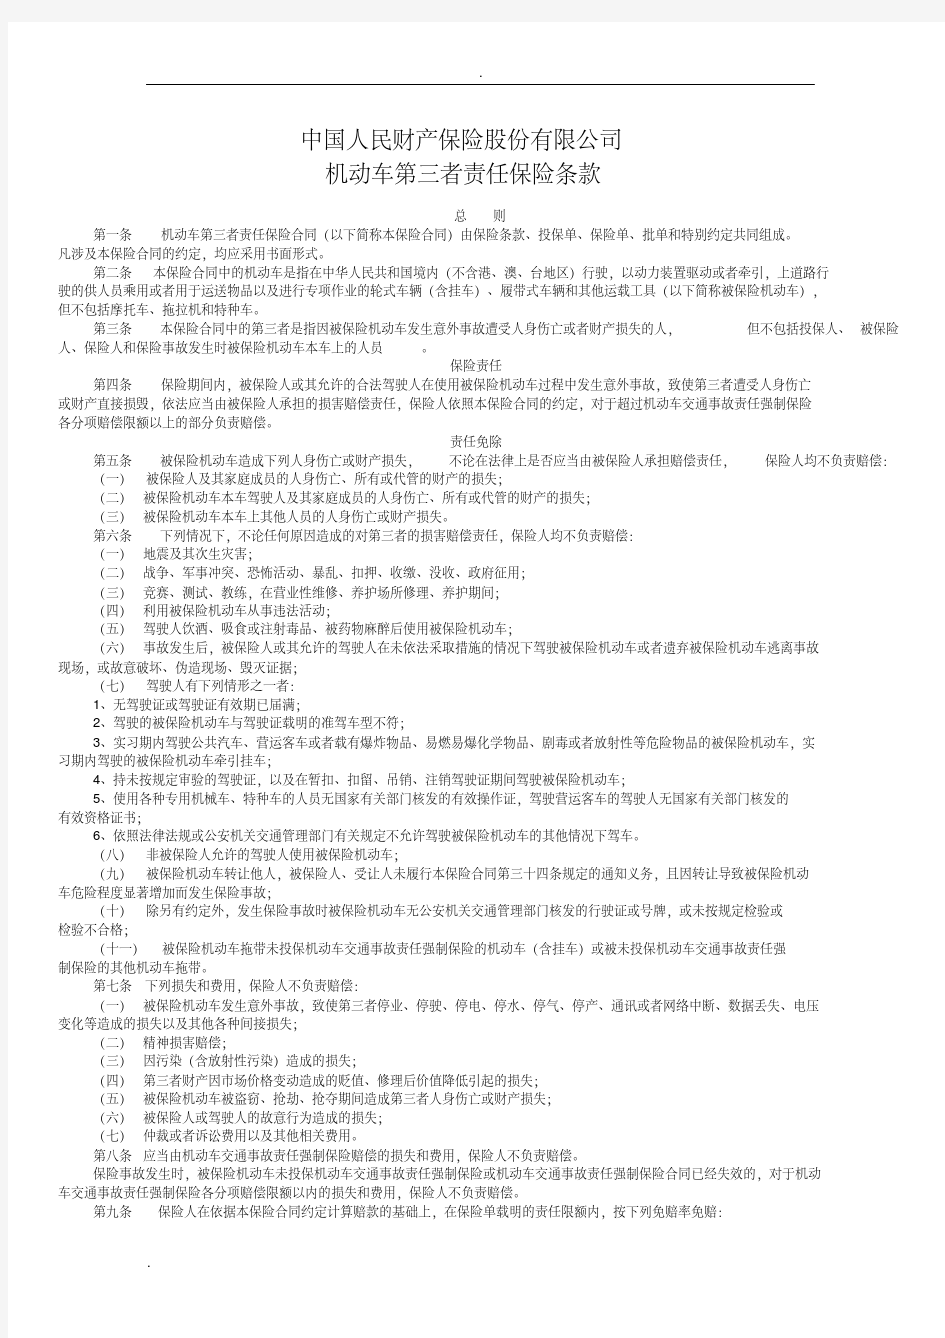 中国人民财产保险股份有限公司保险条款